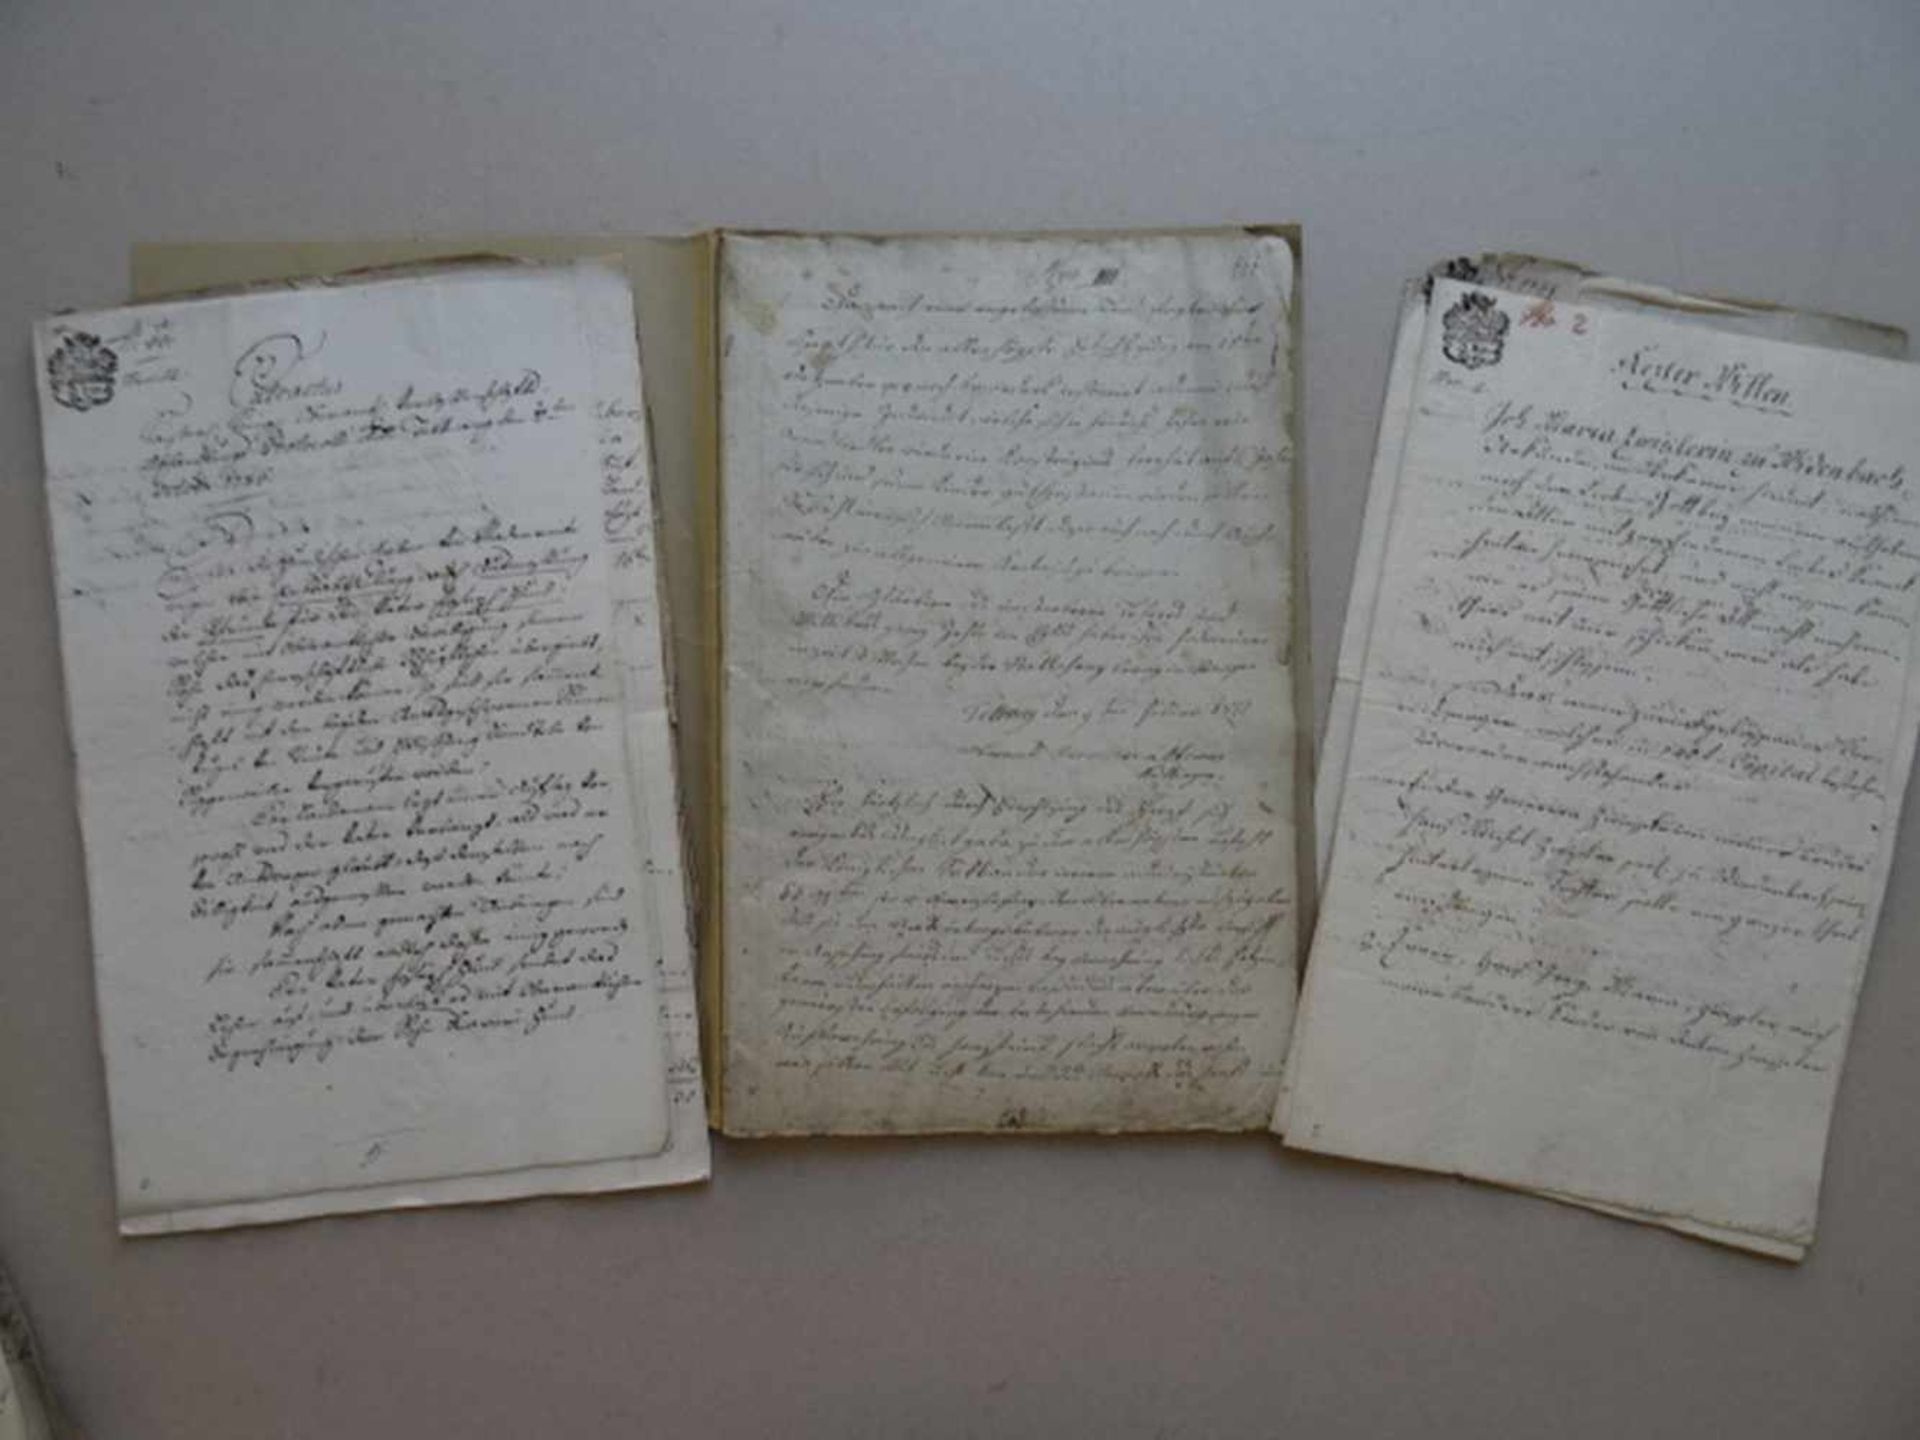 Baden-Württemberg.-Konvolut von 15 handschriftlichen Notariats-Schreiben, Verträgen, beglaubigten - Image 2 of 2